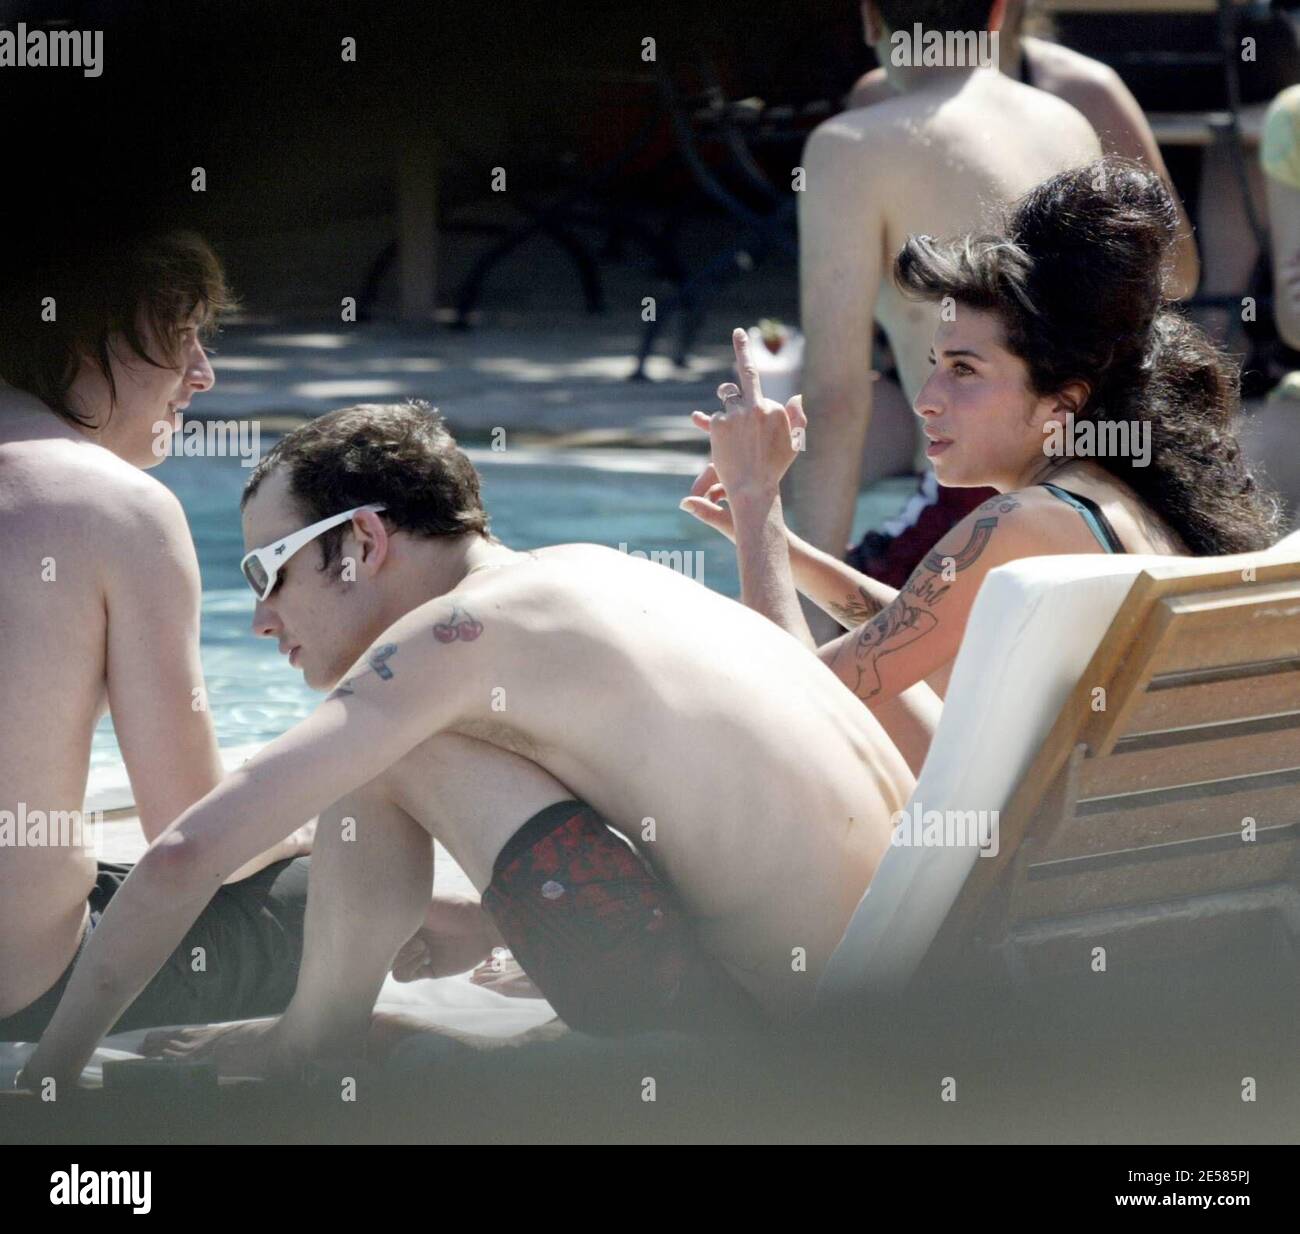 Amy Winehouse, la chanteuse de 'Rehab', a exposé ses tatouages et ses cicatrices dans une paire de shorts et de lys de skimpy top pendant qu'elle se détendit dans la piscine d'un hôtel de Miami Beach, alors qu'elle serait à Miami pour épouser l'amant de longue date Blake fielder-civil dans les prochains jours. Miami, Floride 5/17/07. [[mab]] Banque D'Images